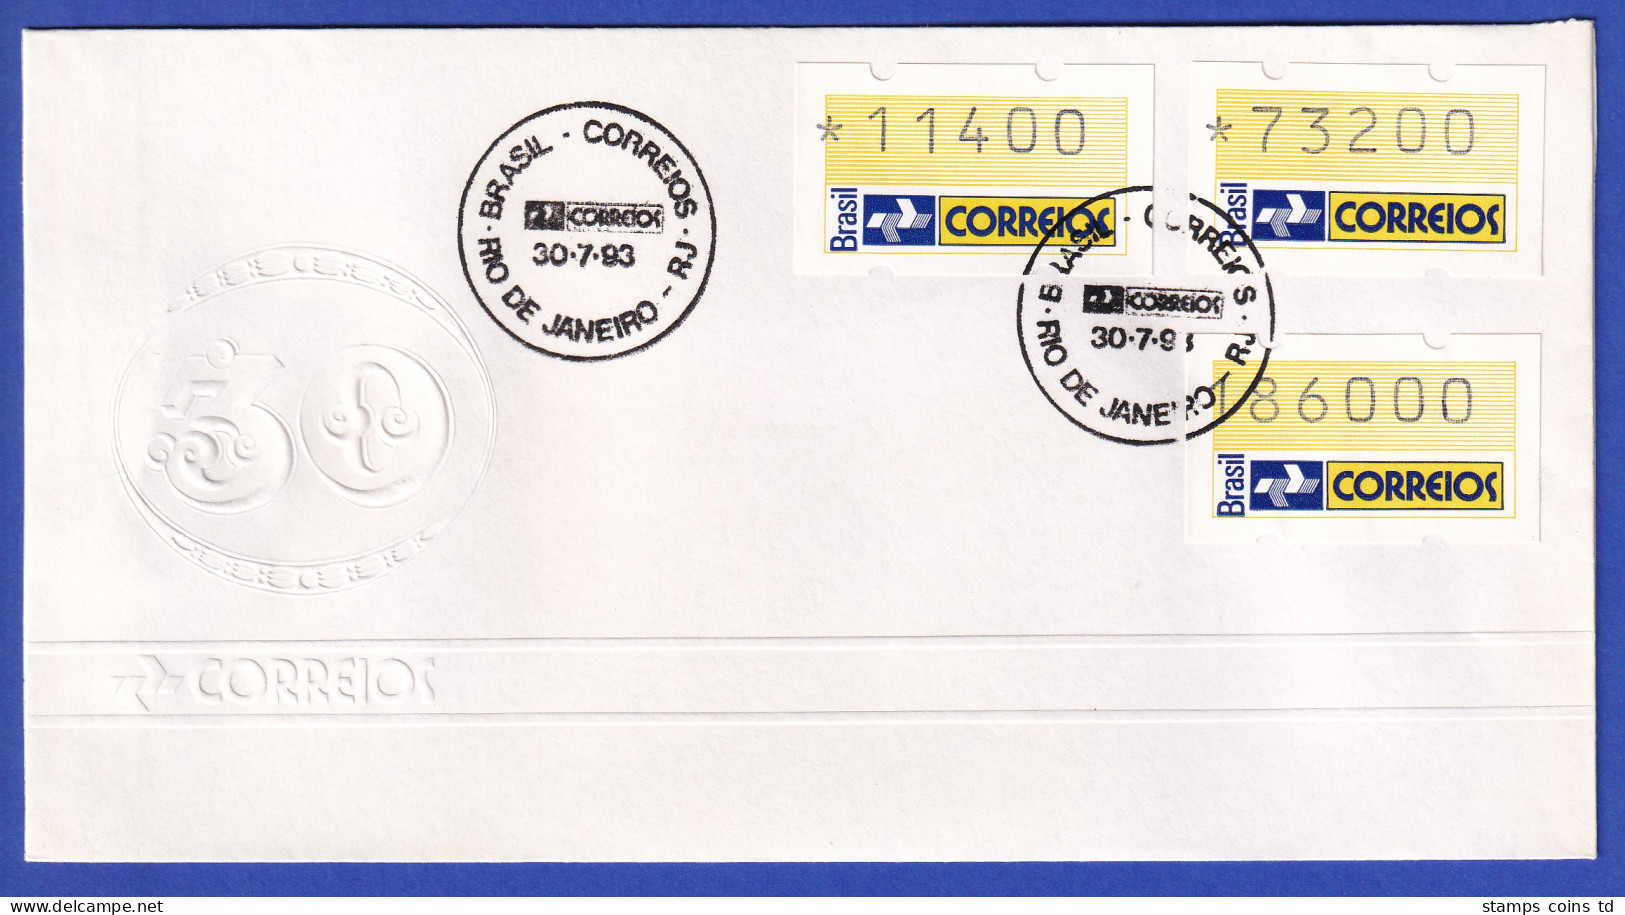 Brasilien 1993 ATM Postemblem Satz 11400-73200-186000 Auf  FDC Mit So-O 30.7.93 - Automatenmarken (Frama)